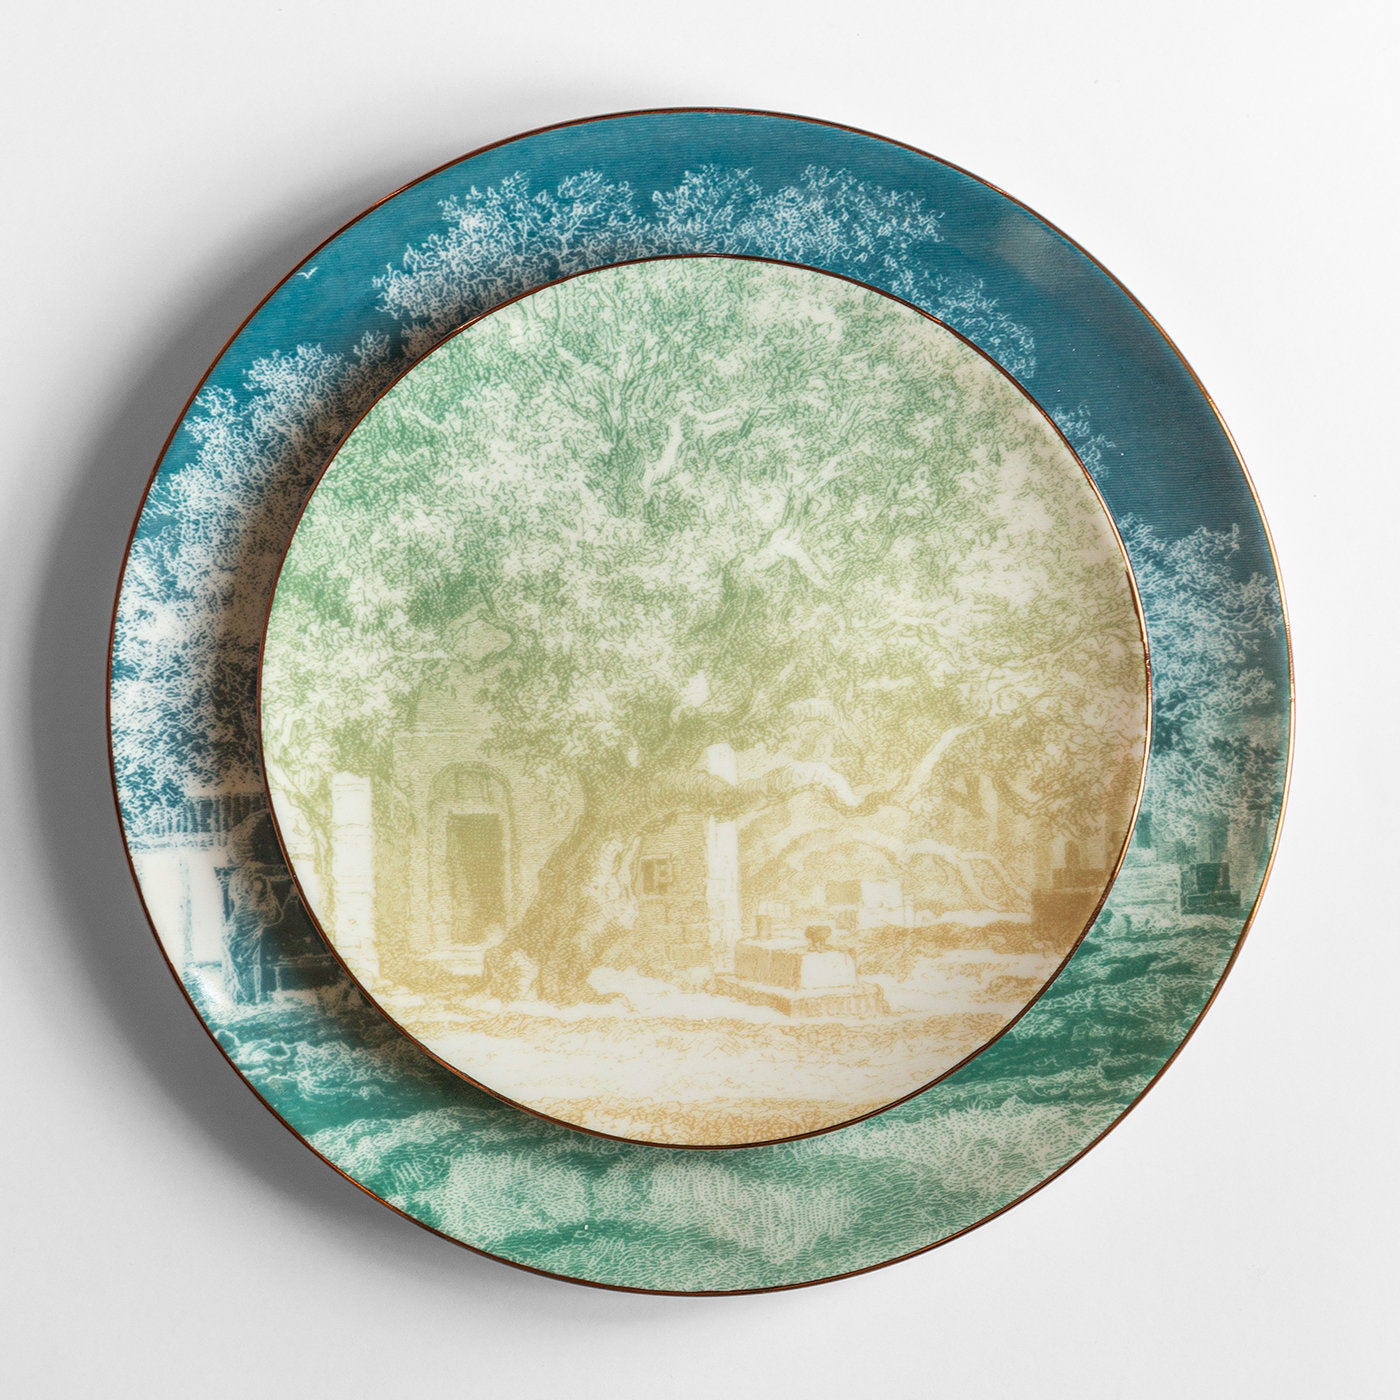 Galtaji Set Of 2 Porcelain Dessert Plates With Landscape #1 - Alternative view 1